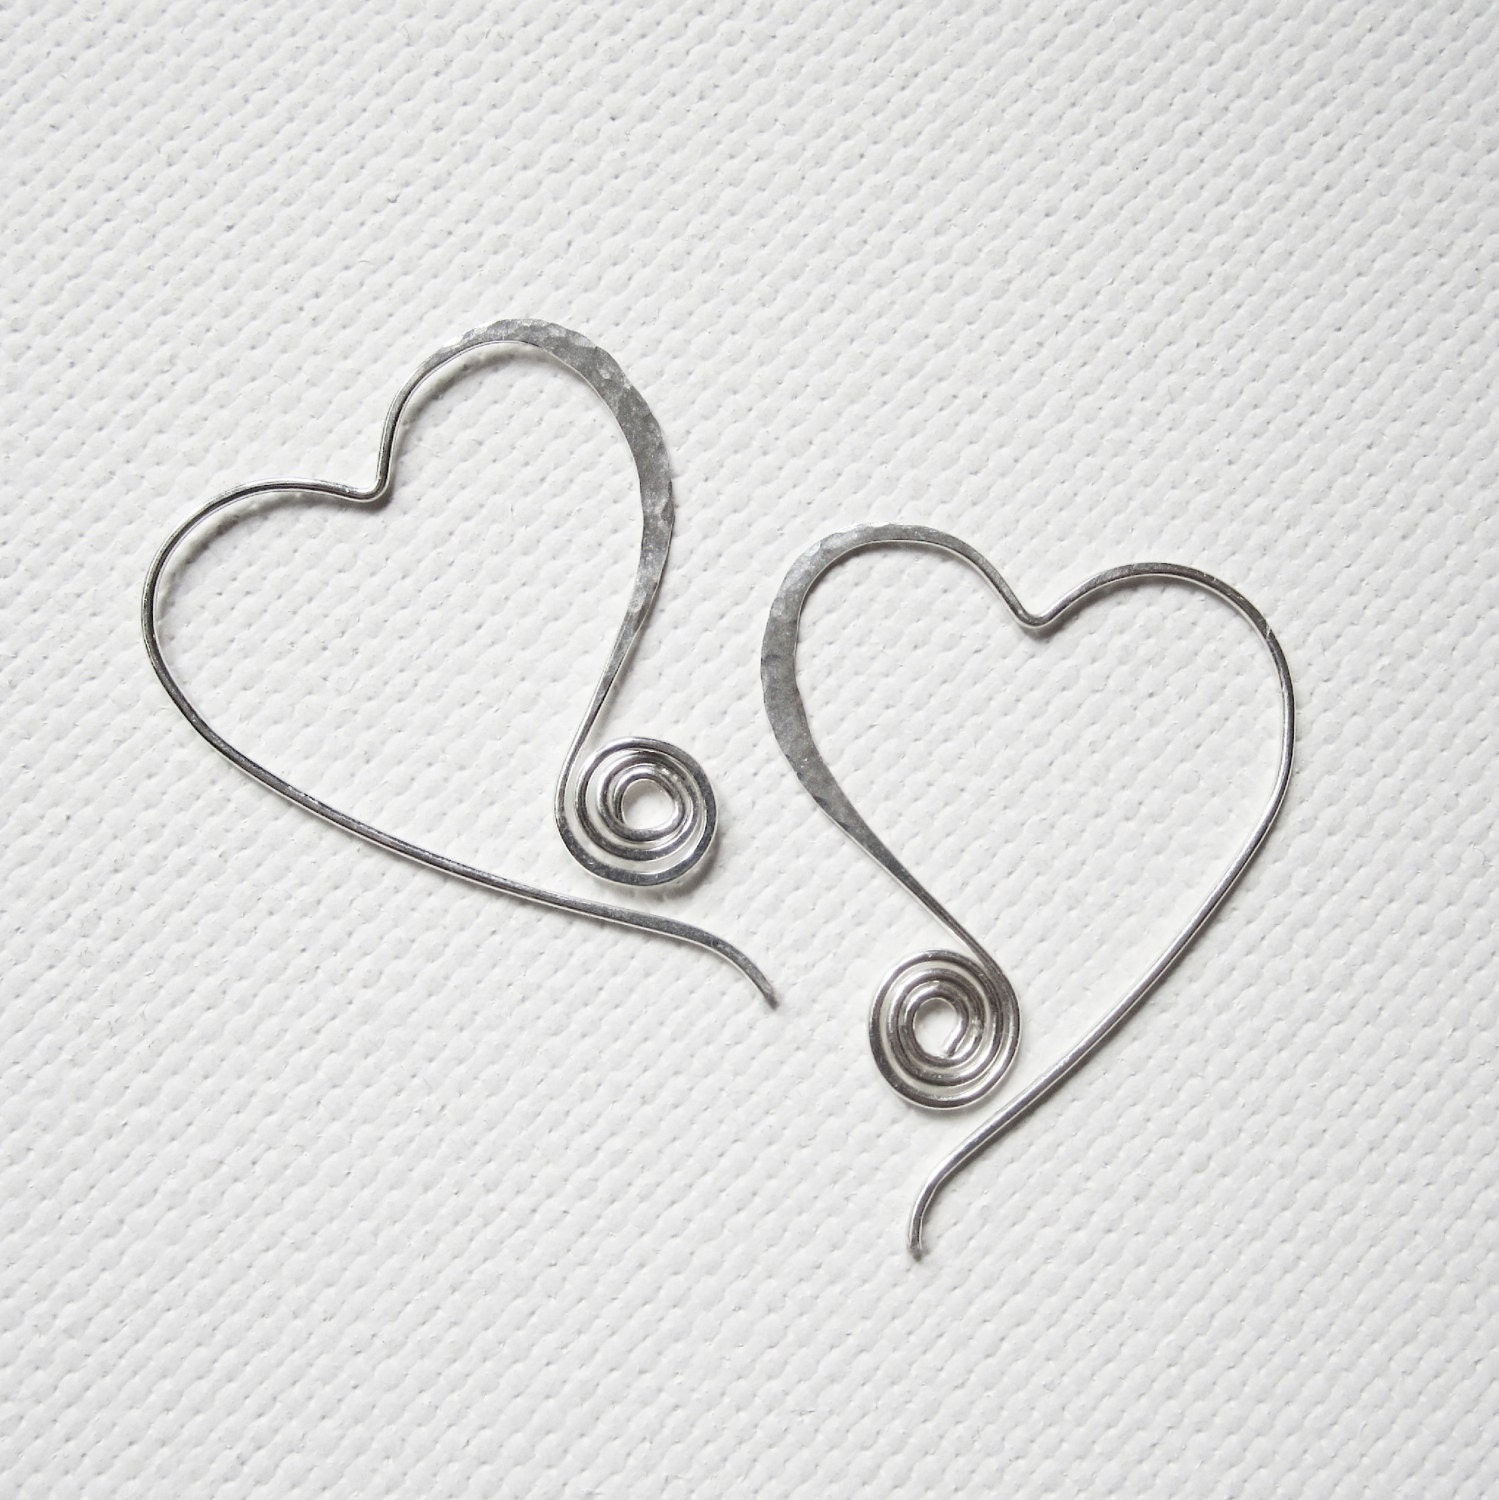 Silver Heart Earrings Open Heart Earrings Heart Earrings Swirl Earrings Hammered Earrings Hammered Heart Earrings Light Weight Earrings